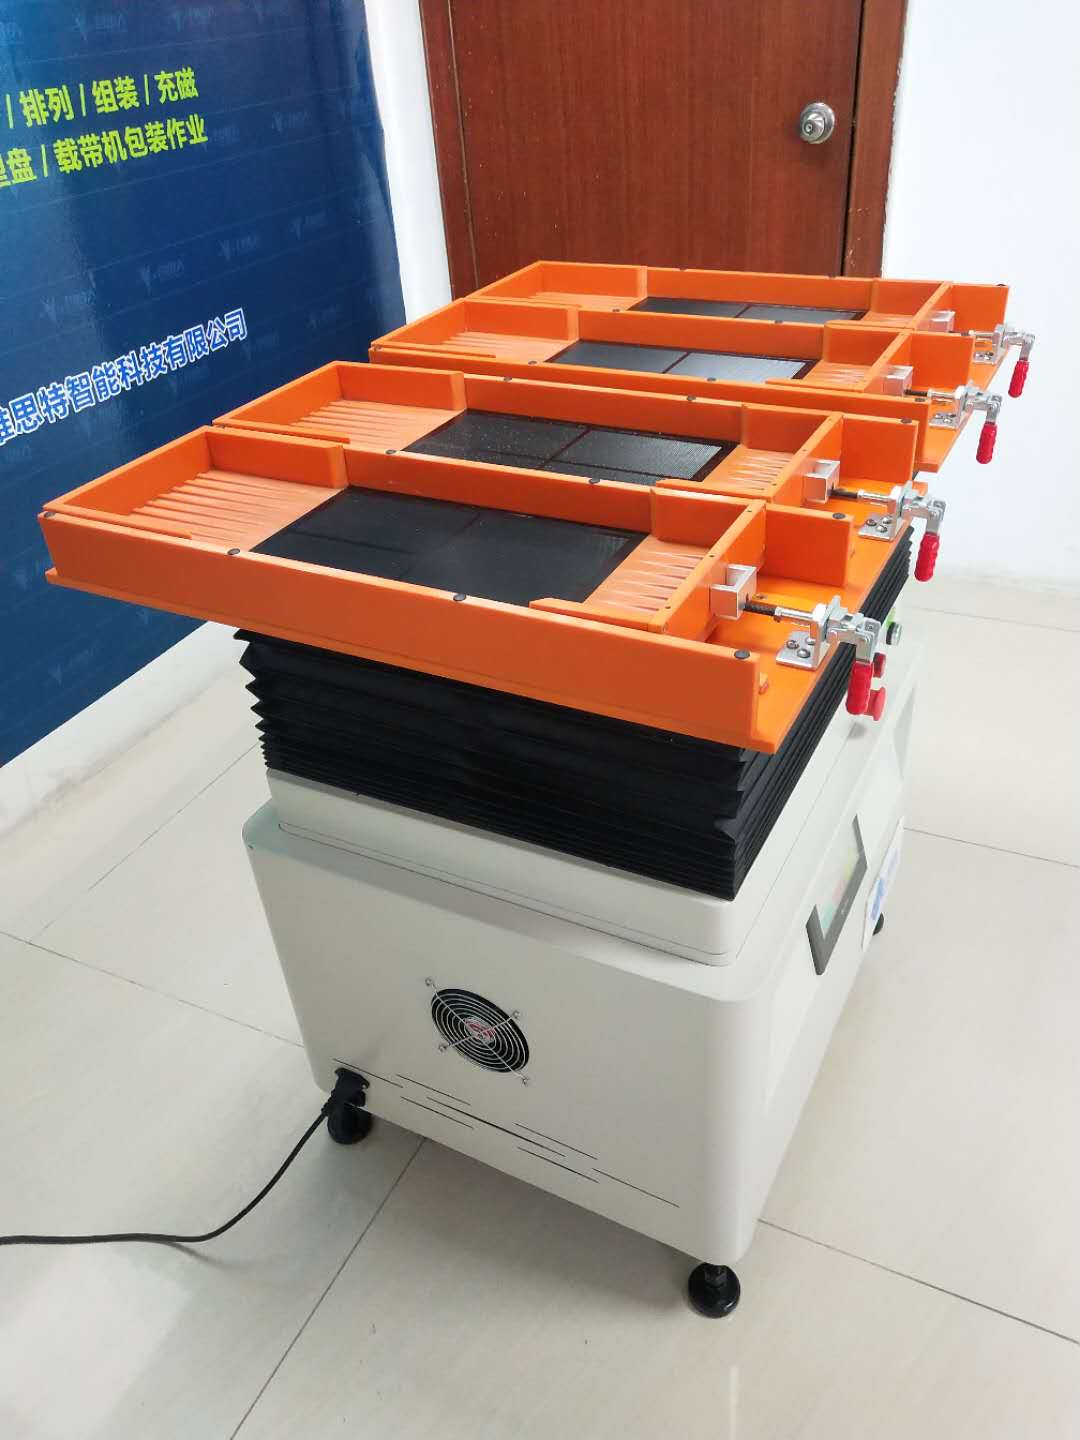 山东厂家直销 pogopin组装机 均温板组装机 多功能振动盘图片